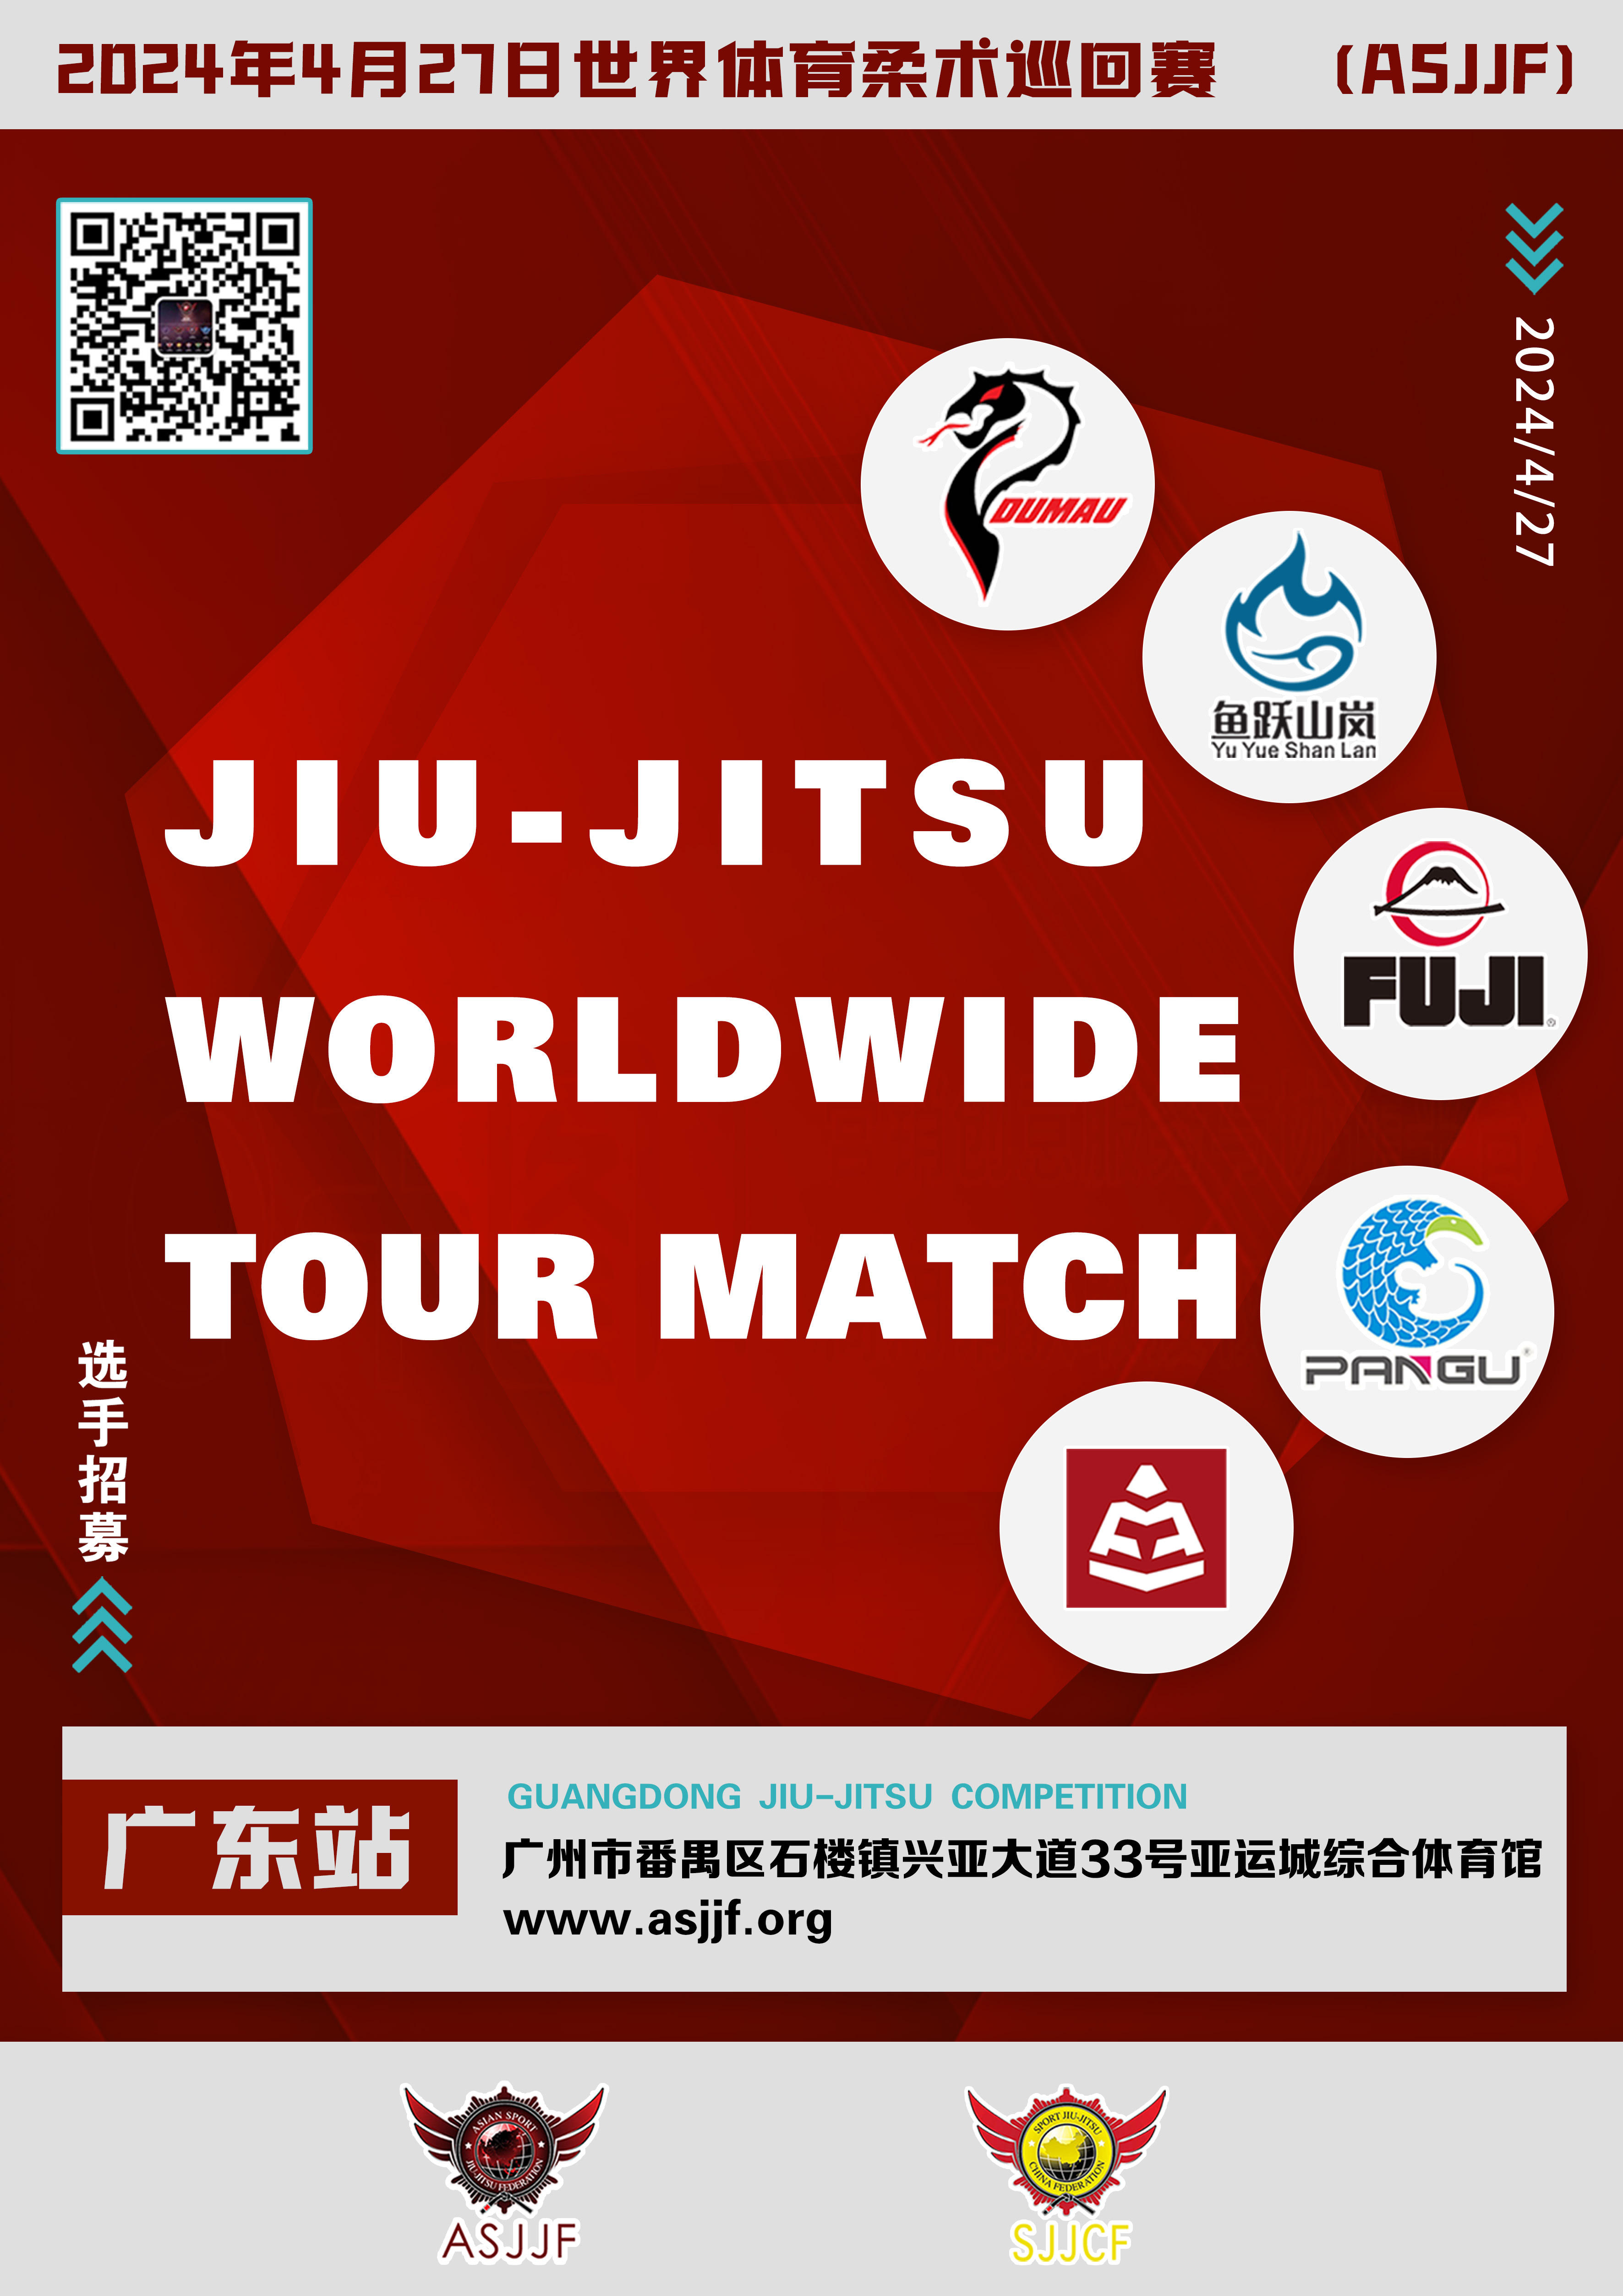 sjjcf guangdong jiu jitsu championship 2024